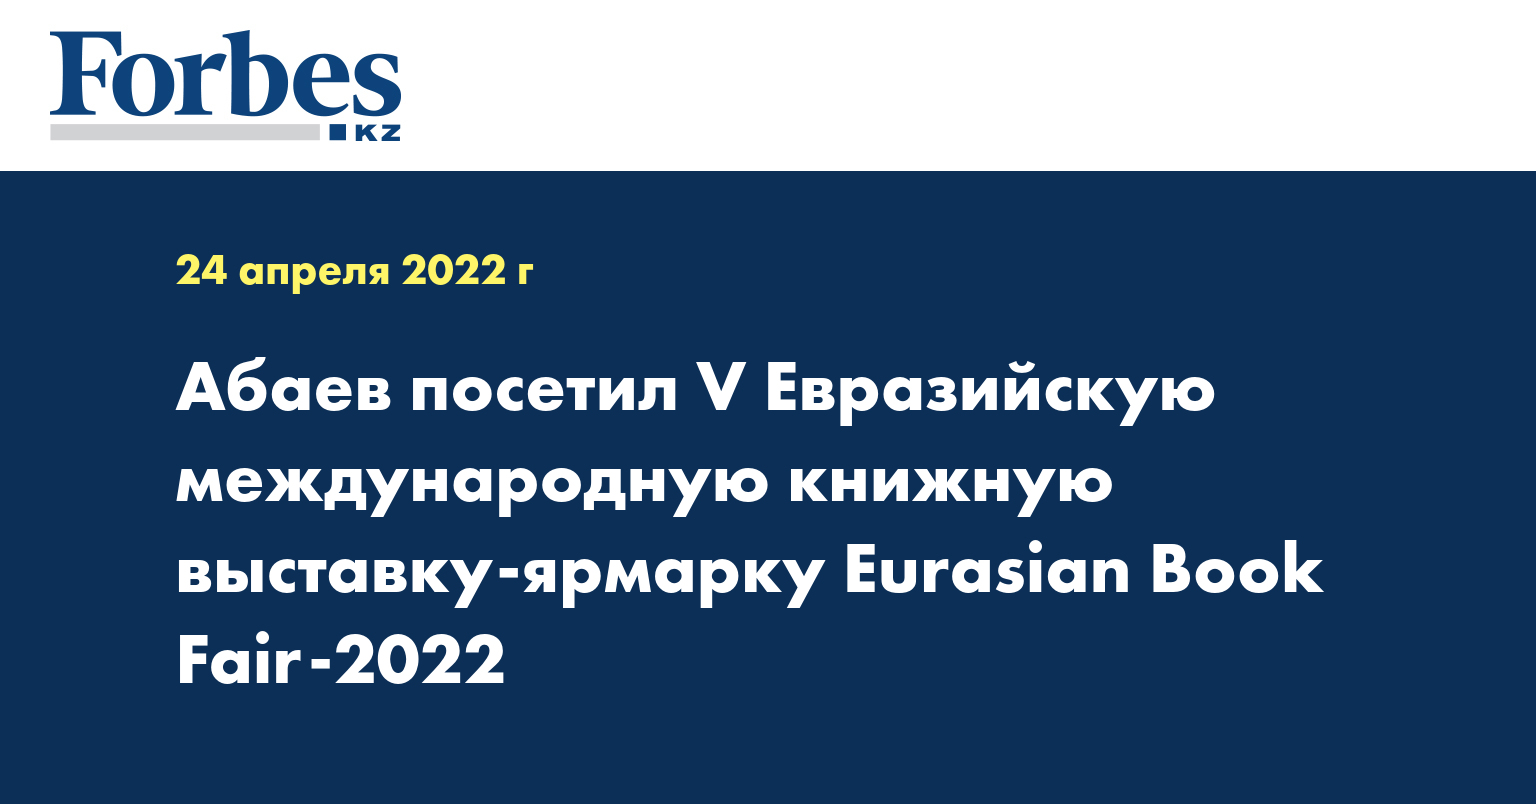 Абаев посетил V Евразийскую международную книжную выставку-ярмарку Eurasian Book Fair-2022